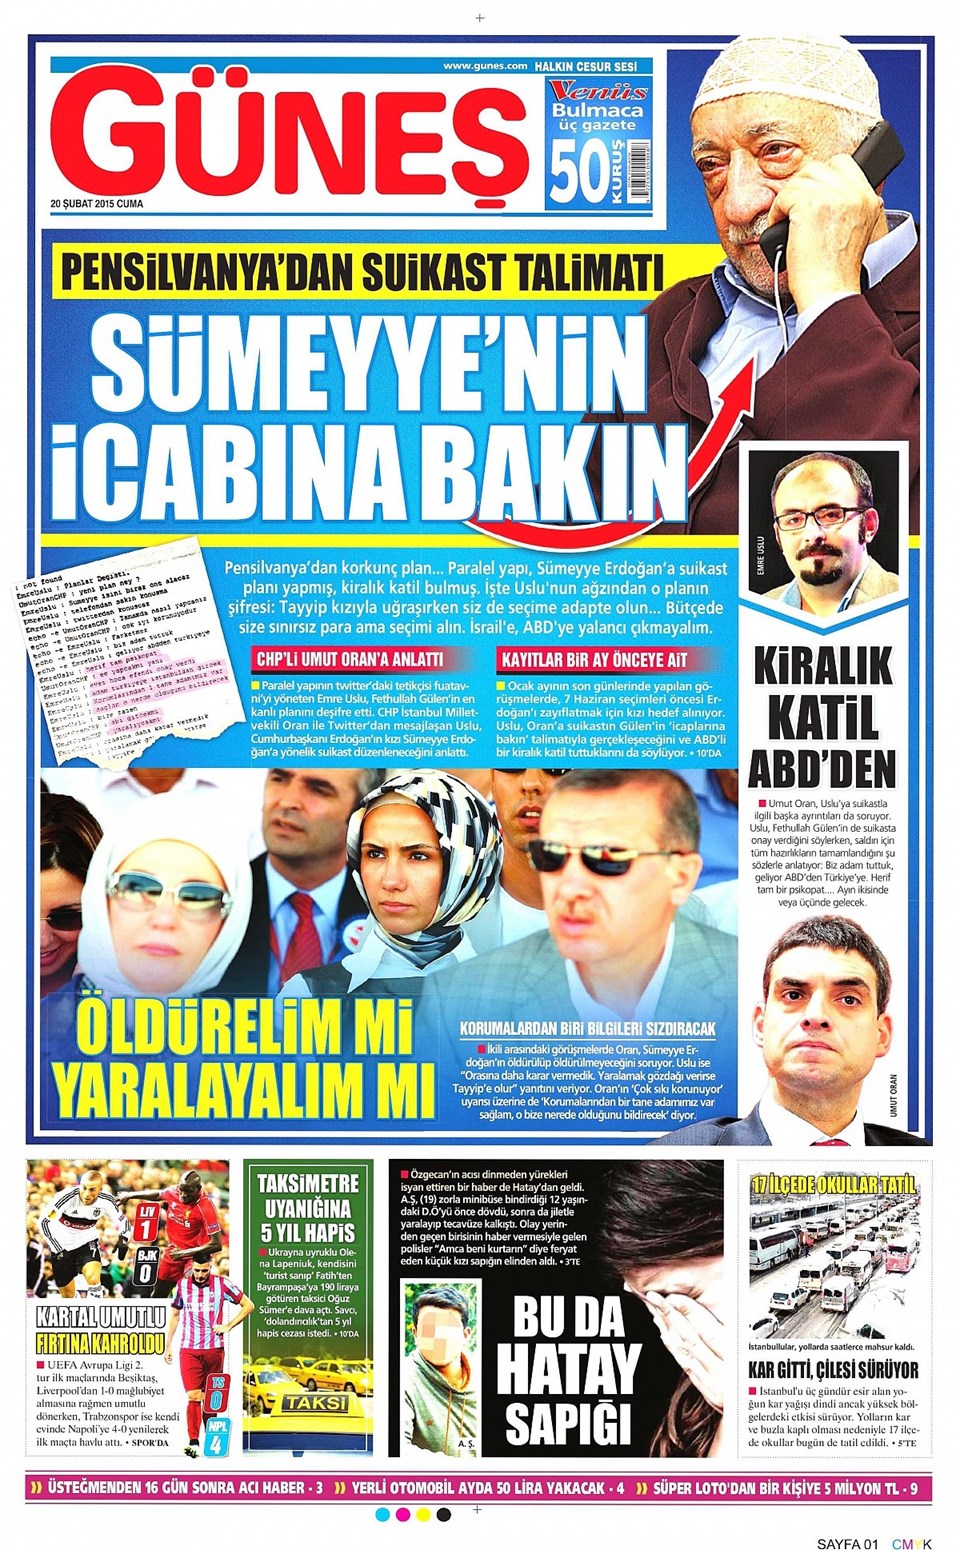 Sümeyye Erdoğan'a suikast iddiasına soruşturma - 3